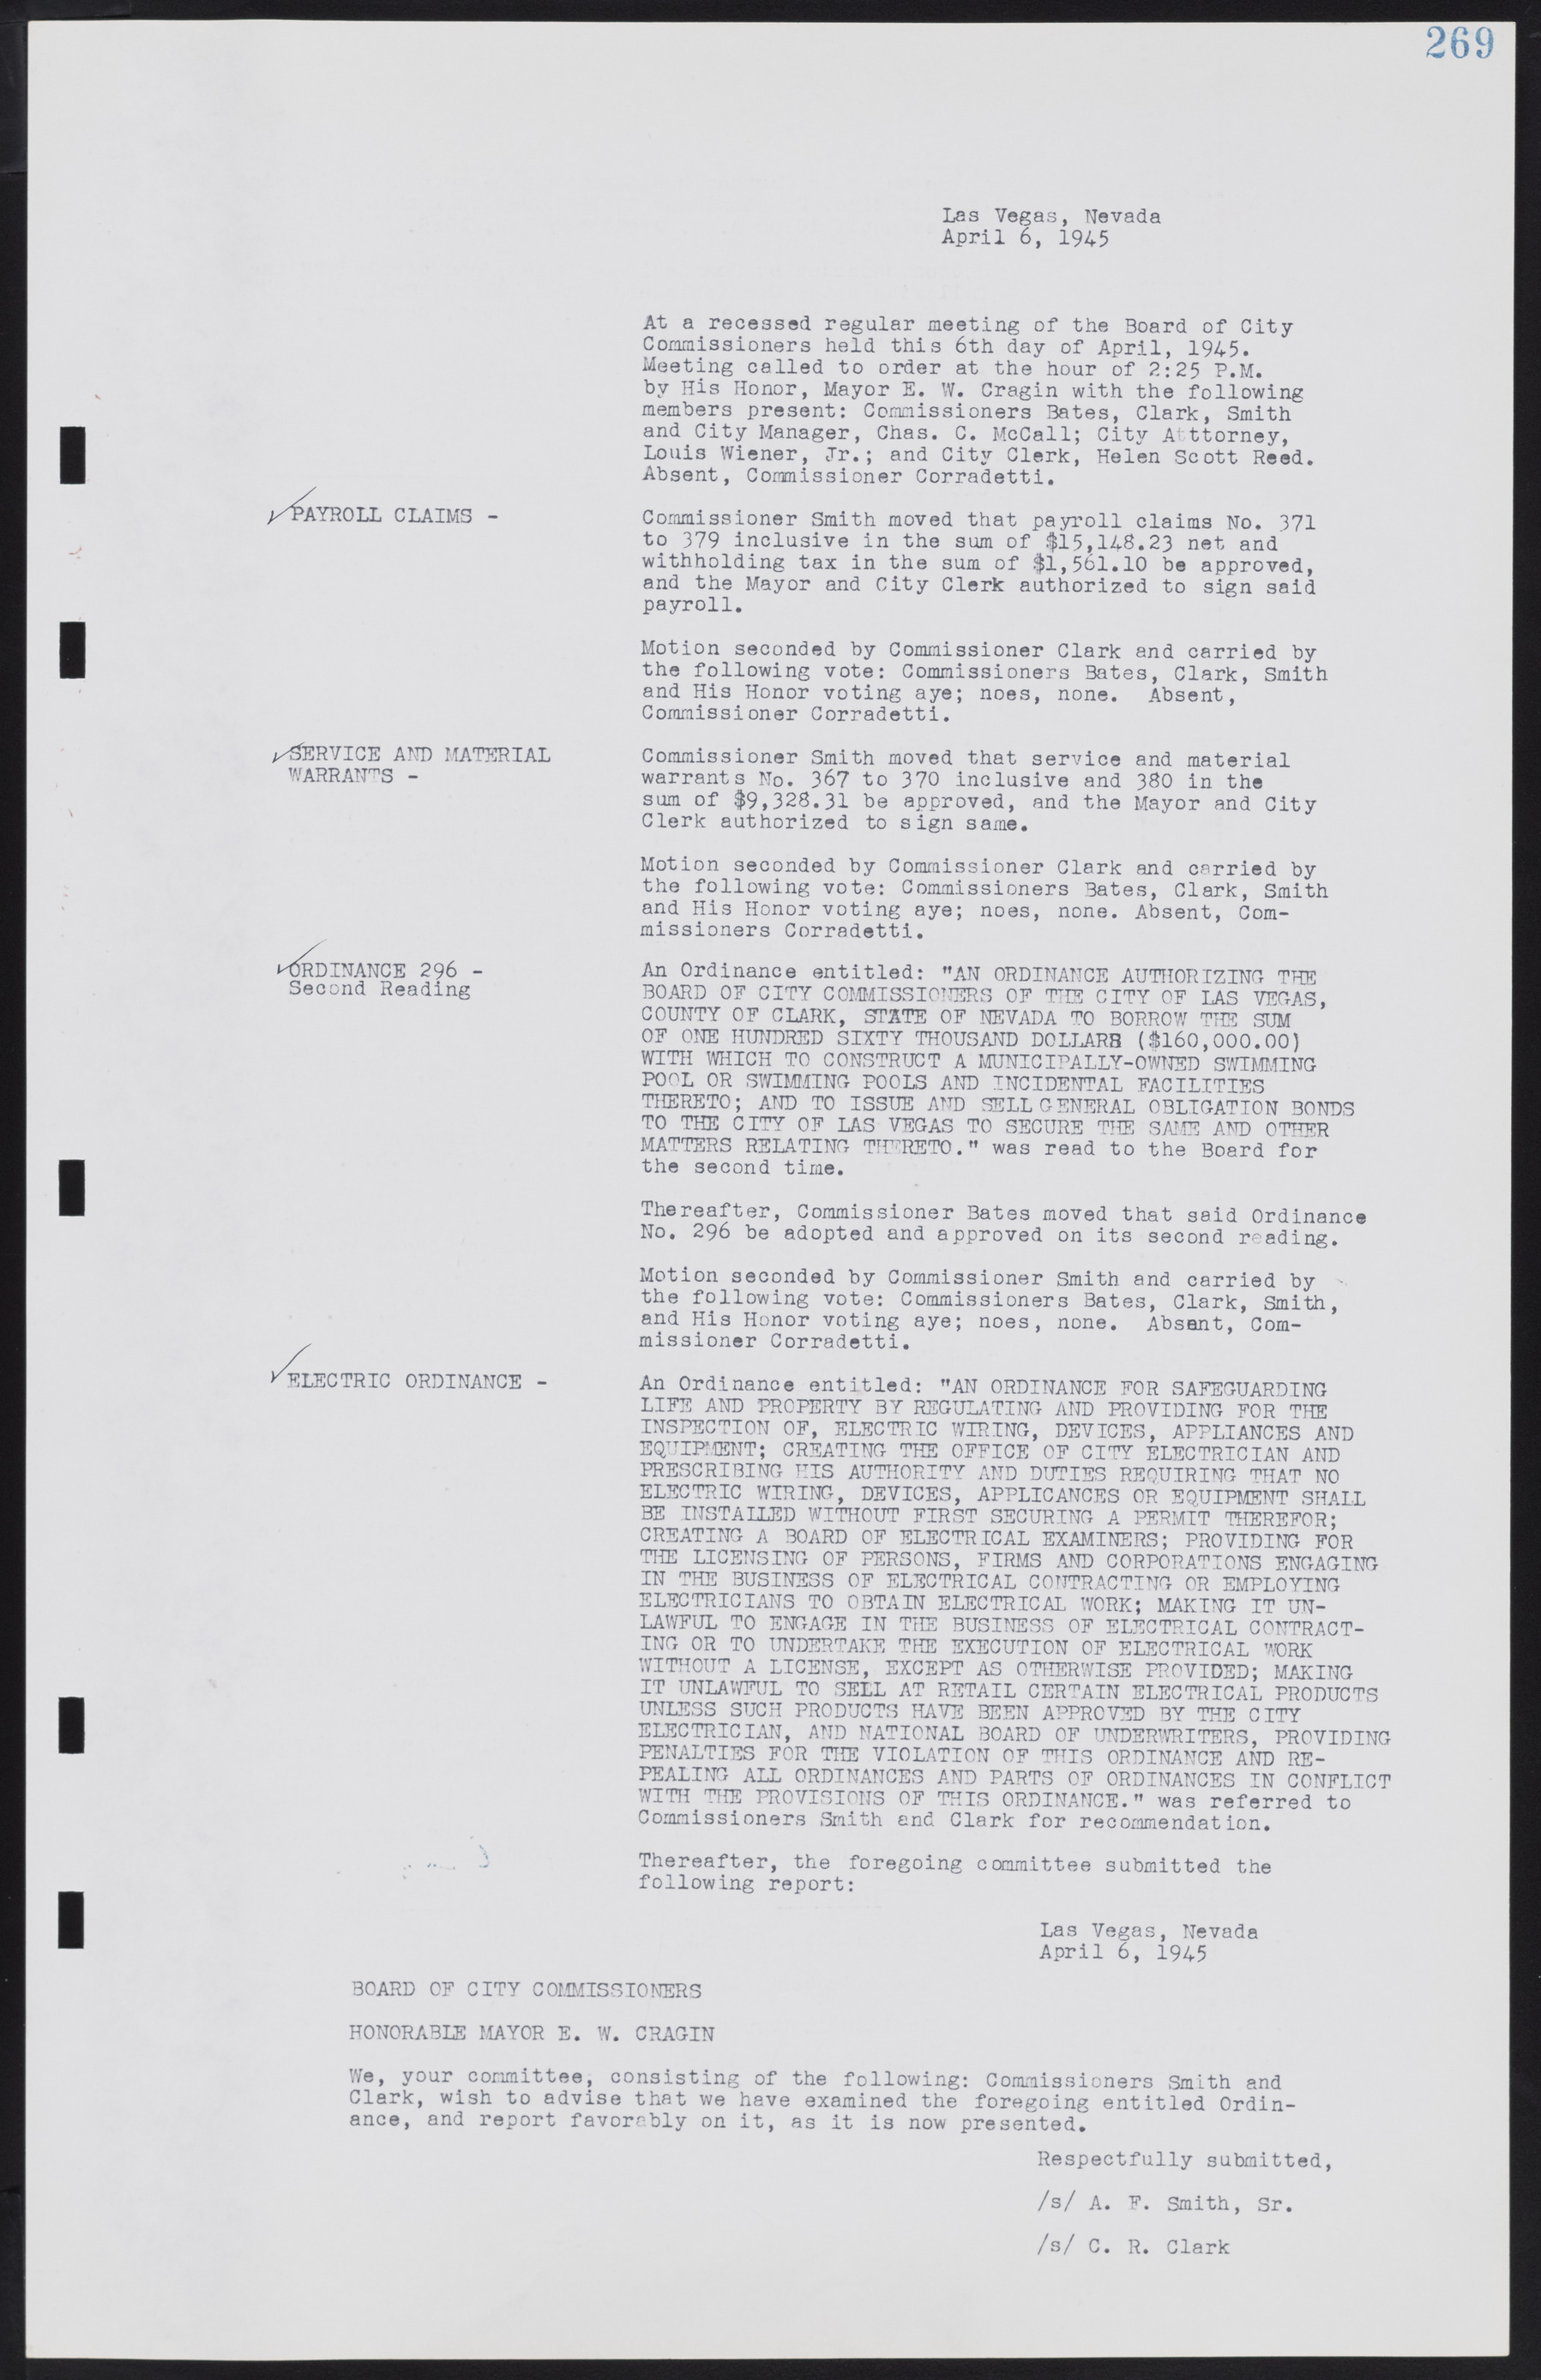 Las Vegas City Commission Minutes, August 11, 1942 to December 30, 1946, lvc000005-291